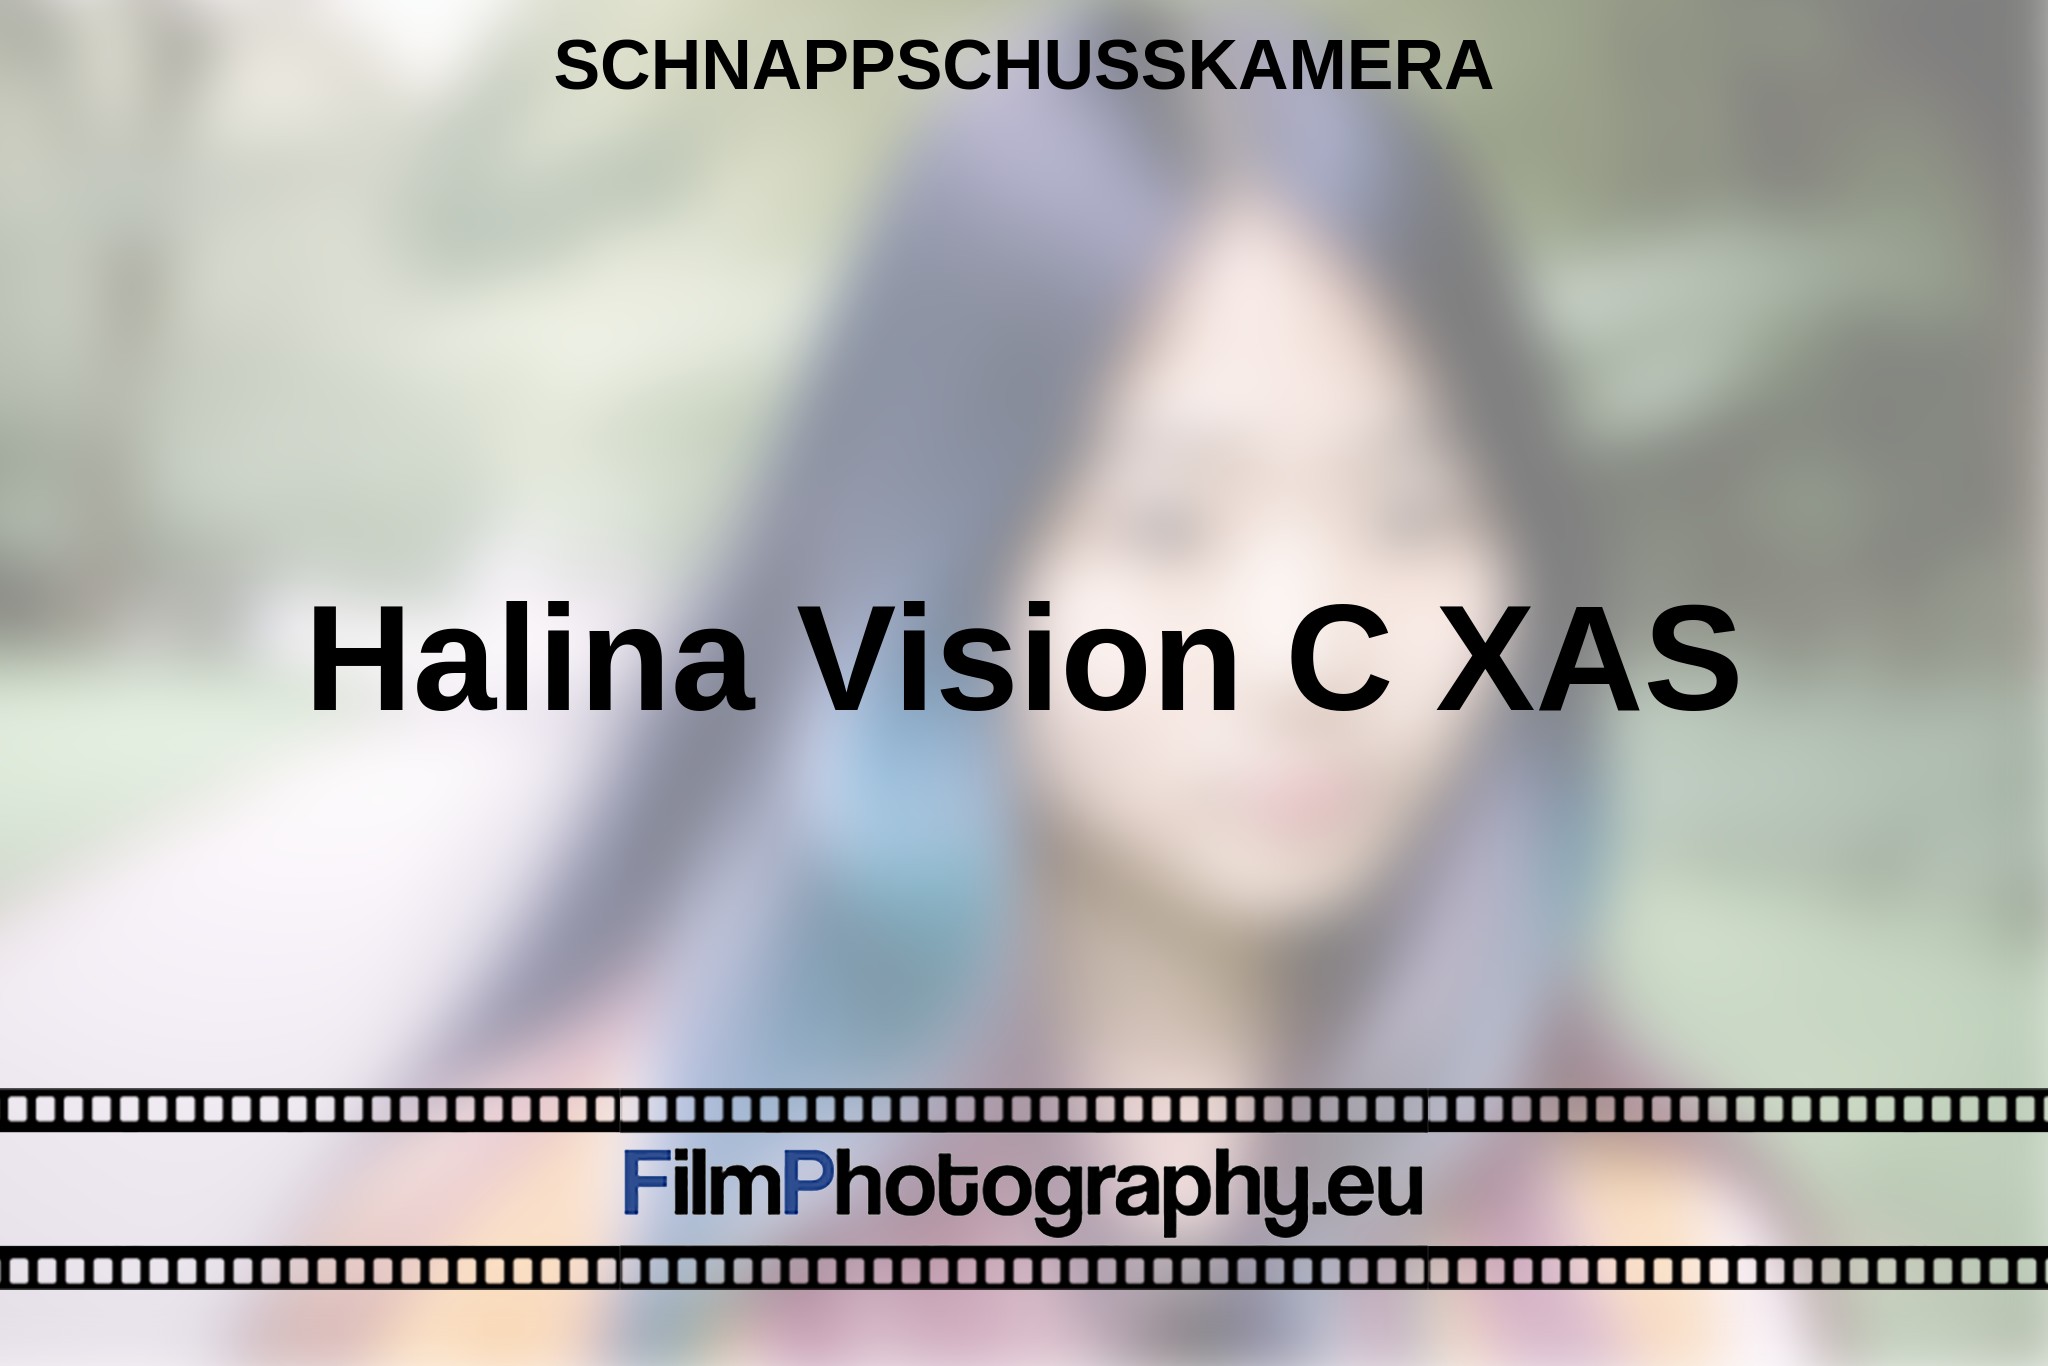 halina-vision-c-xas-schnappschusskamera-bnv.jpg